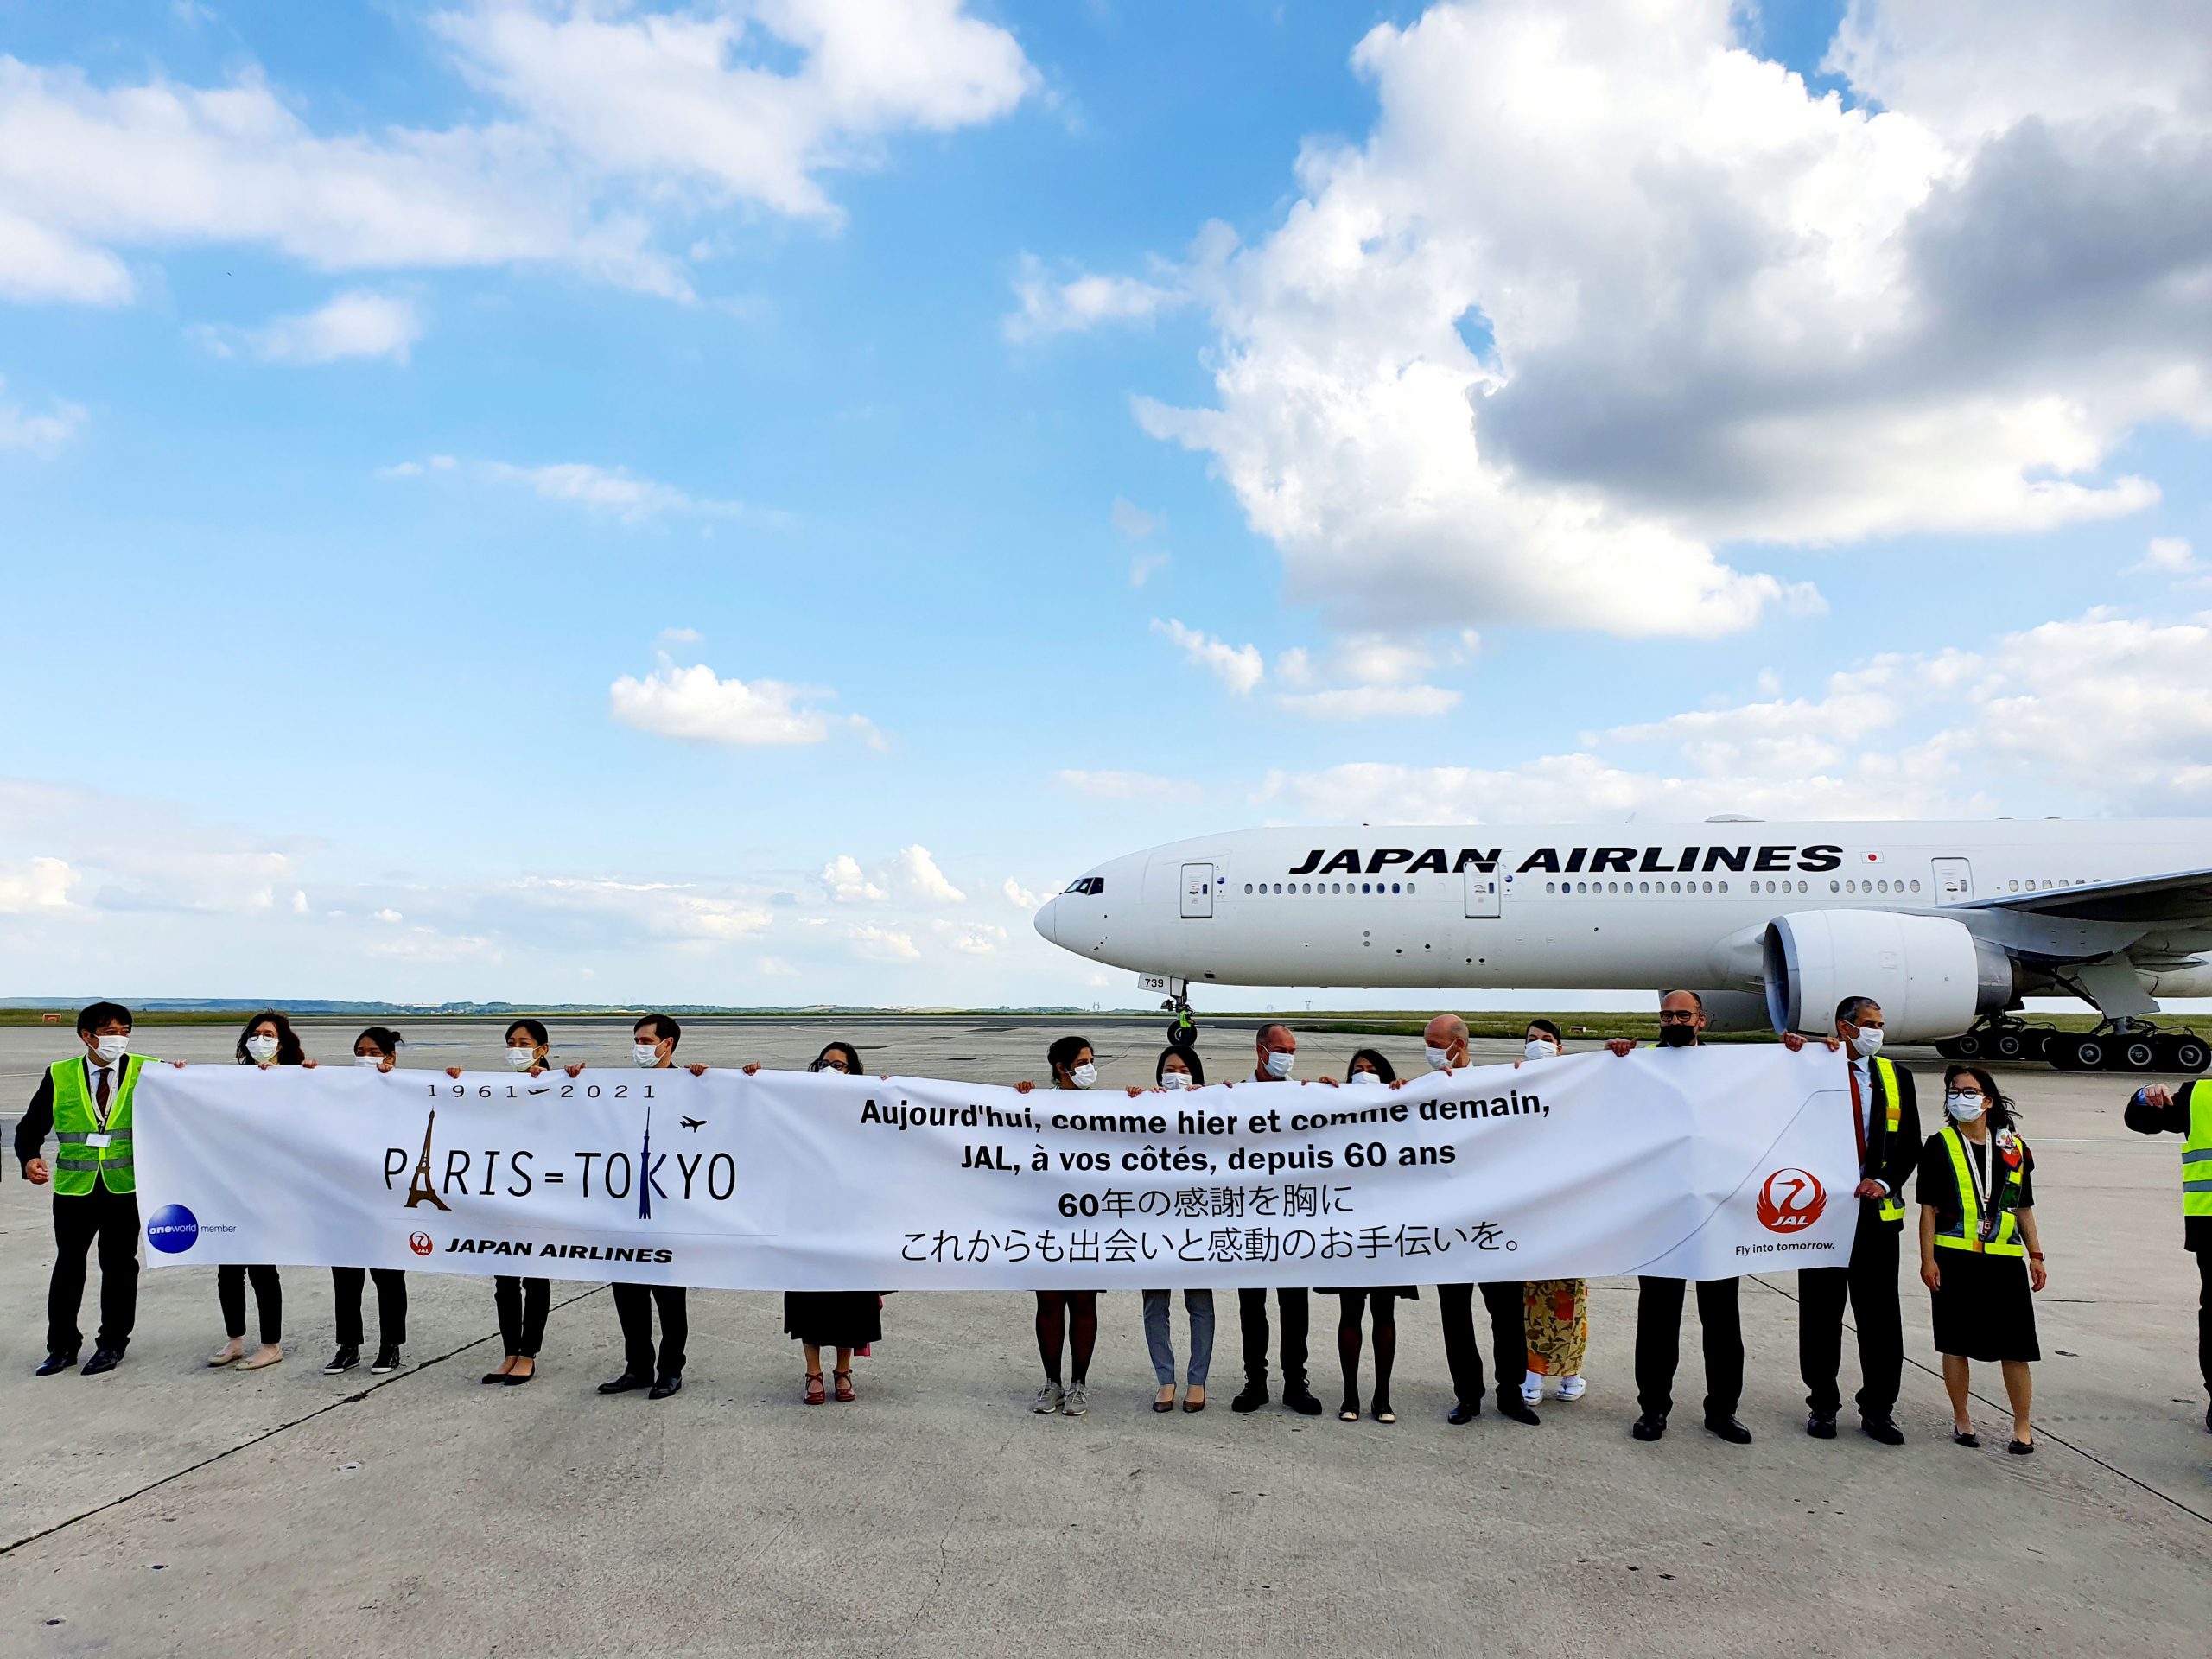 L’Union européenne signe un accord aérien avec le Japon 37 Air Journal